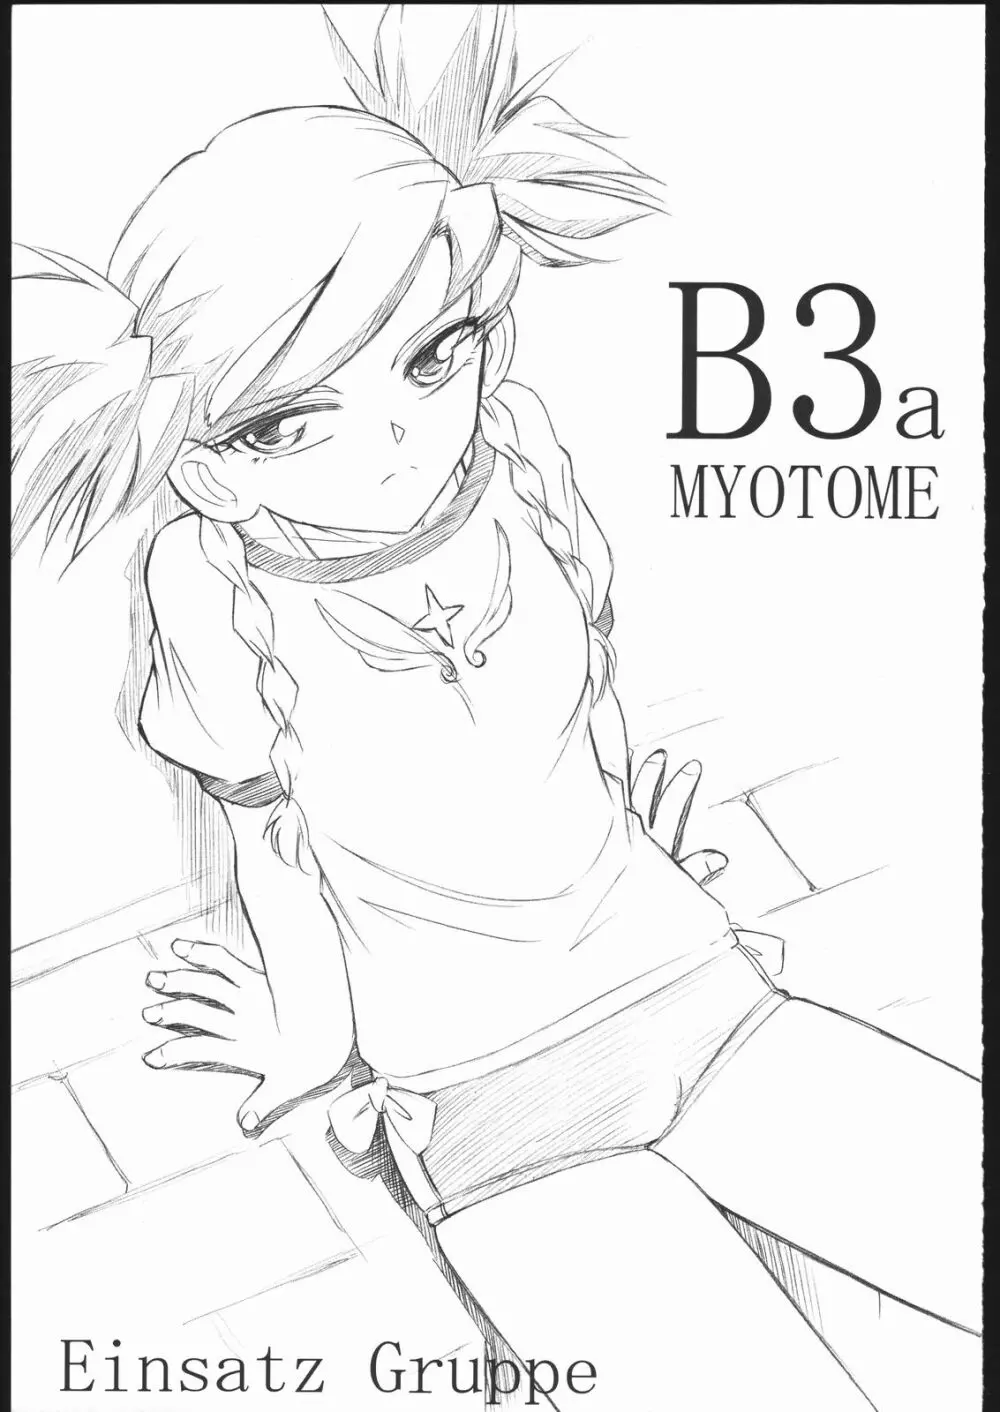 B3a MYOTOMO